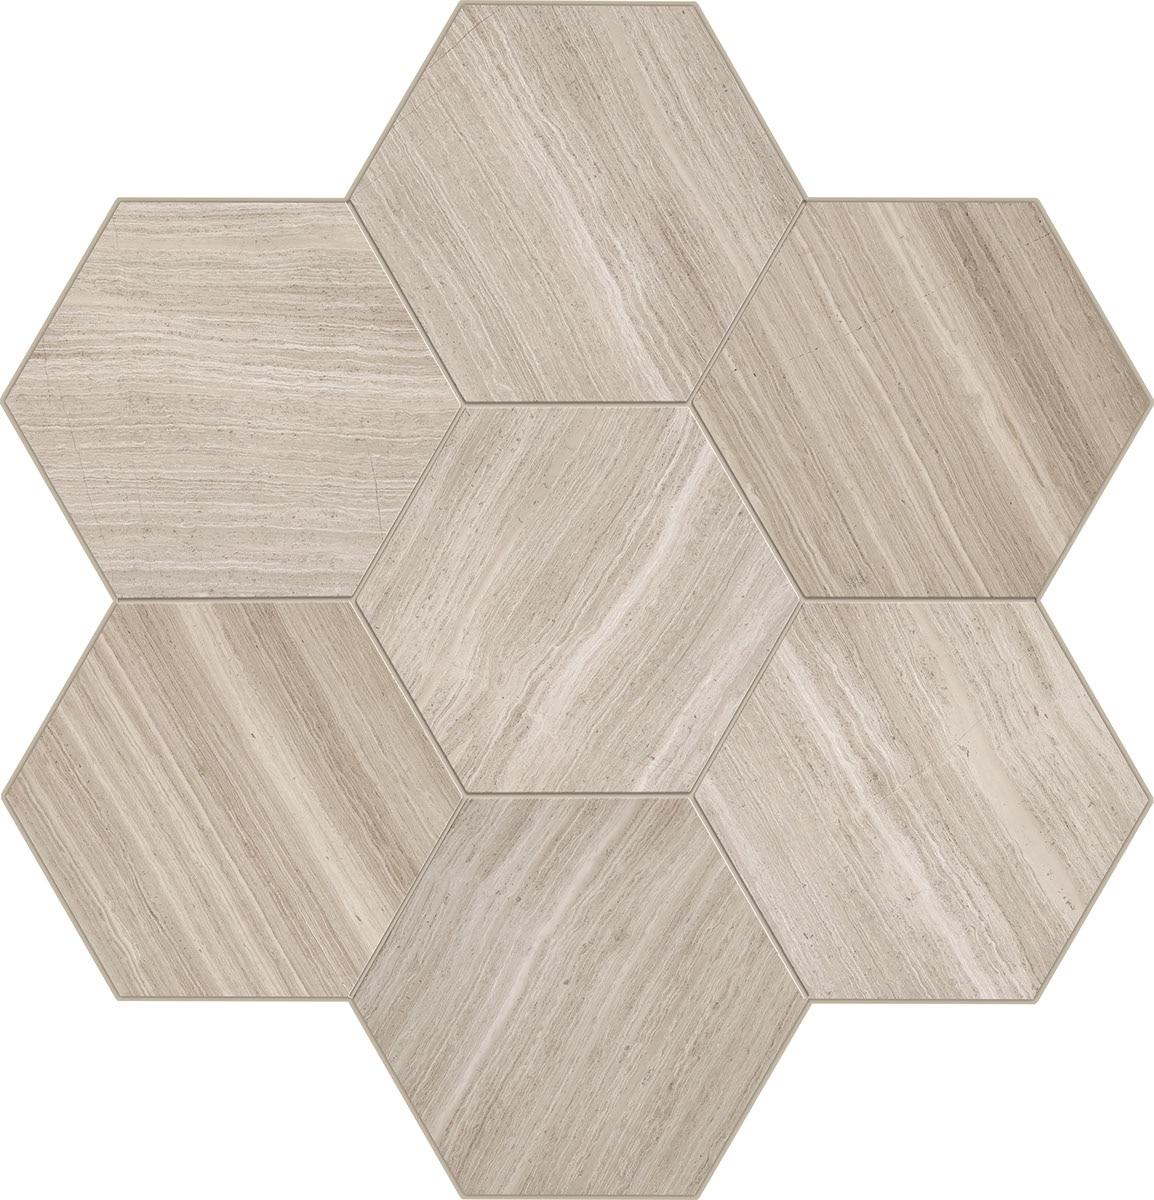 Hexagon Natural Stone Tiles